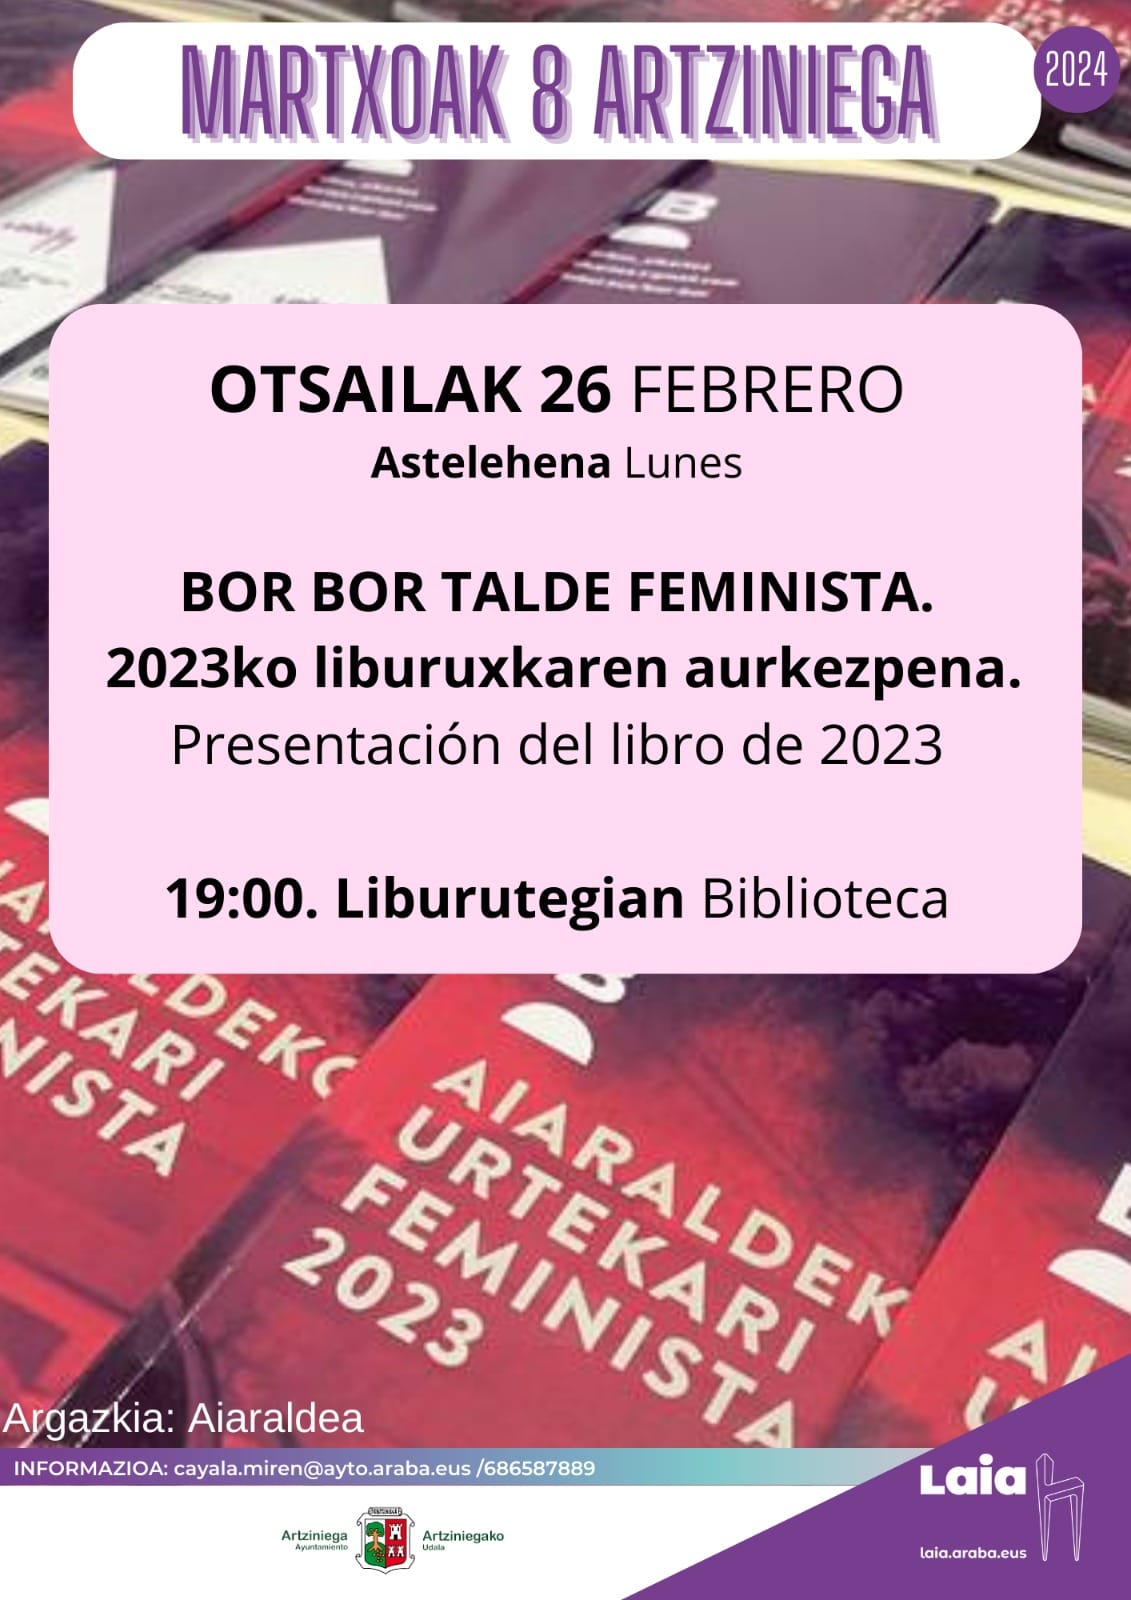 PRESENTACIÓN DEL LIBRO DE 2023: BOR BOR TALDE FEMINISTA (26 DE FEBRERO EN LA BIBLIOTECA A LAS 19:00)